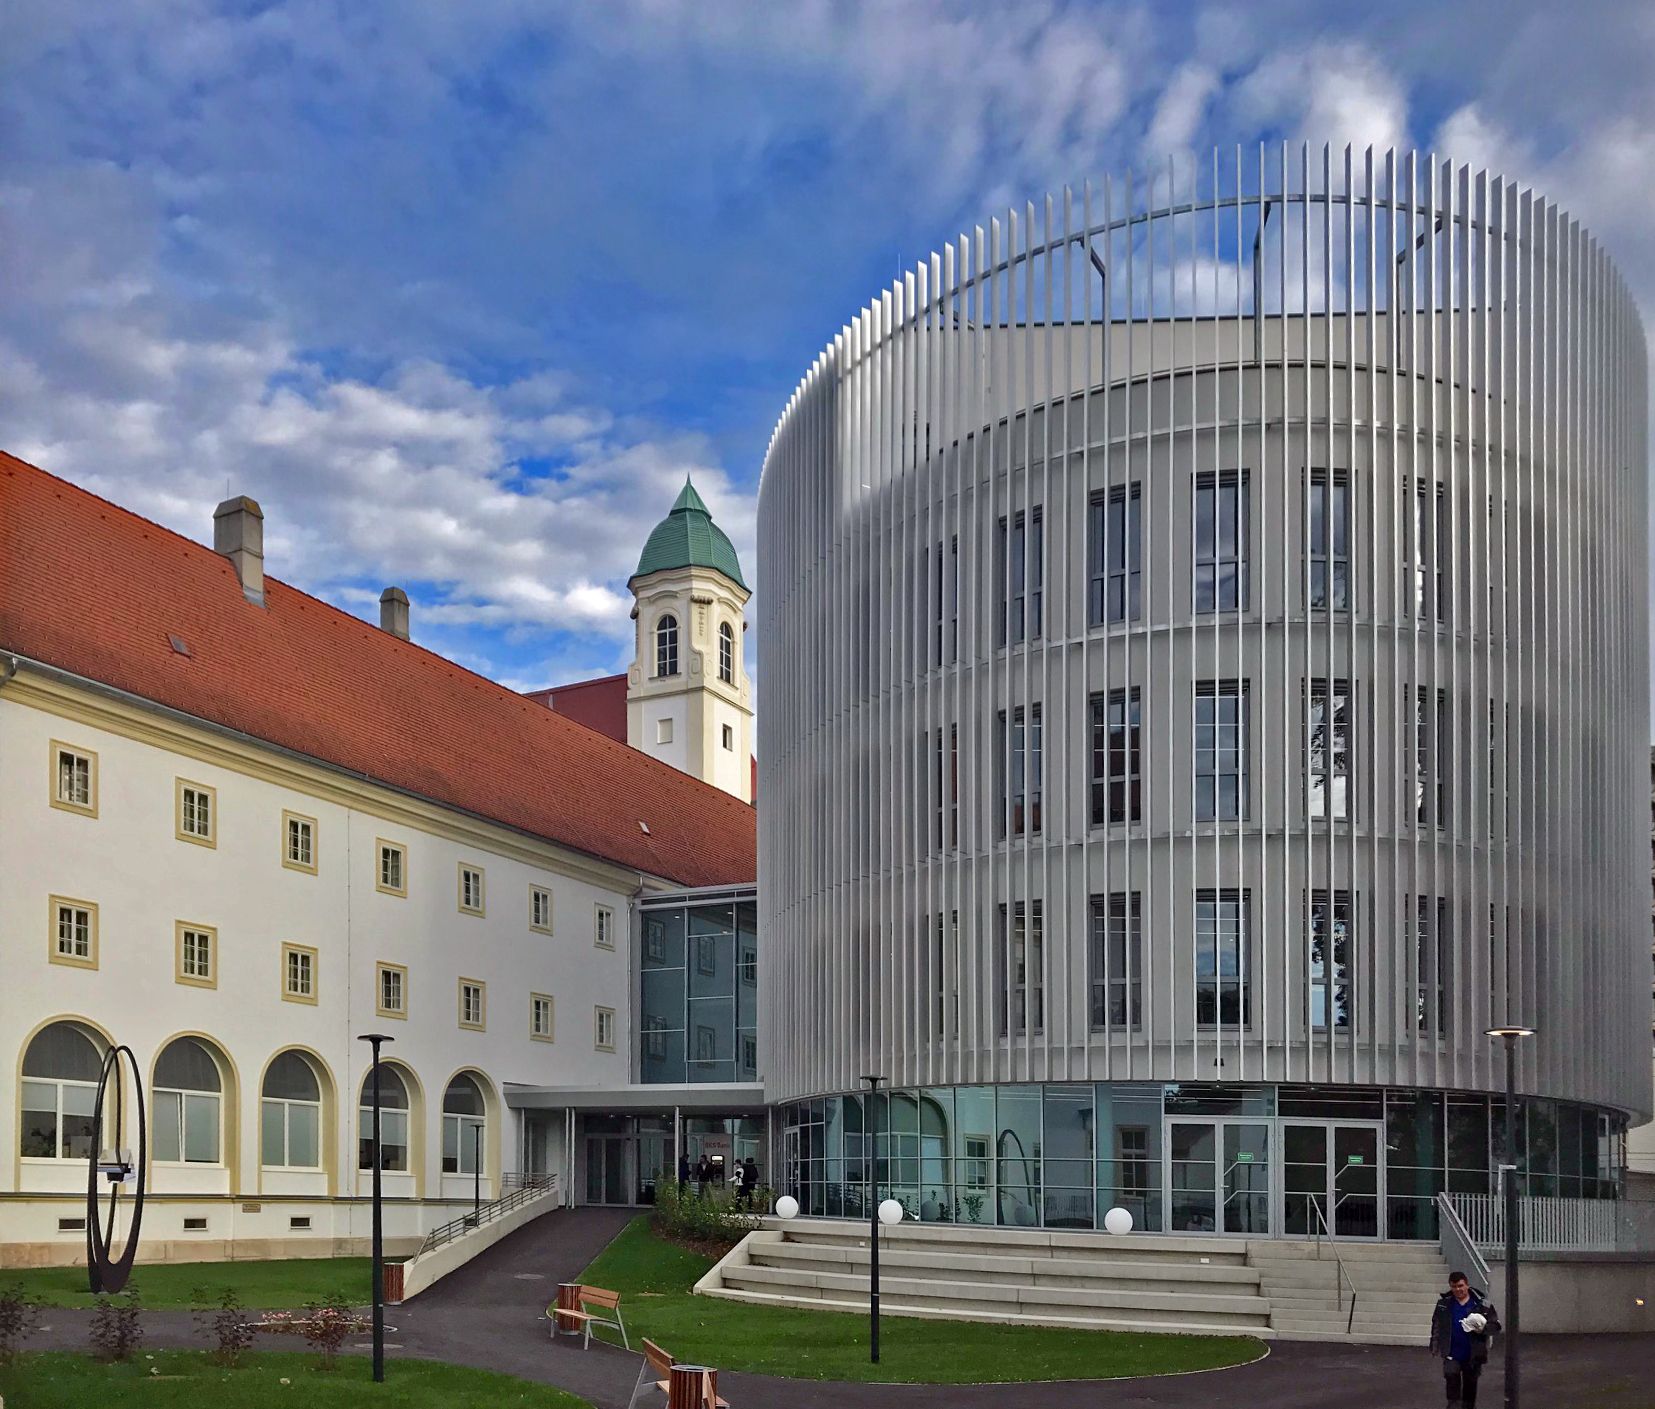 Fachhochschule Wiener Neustadt